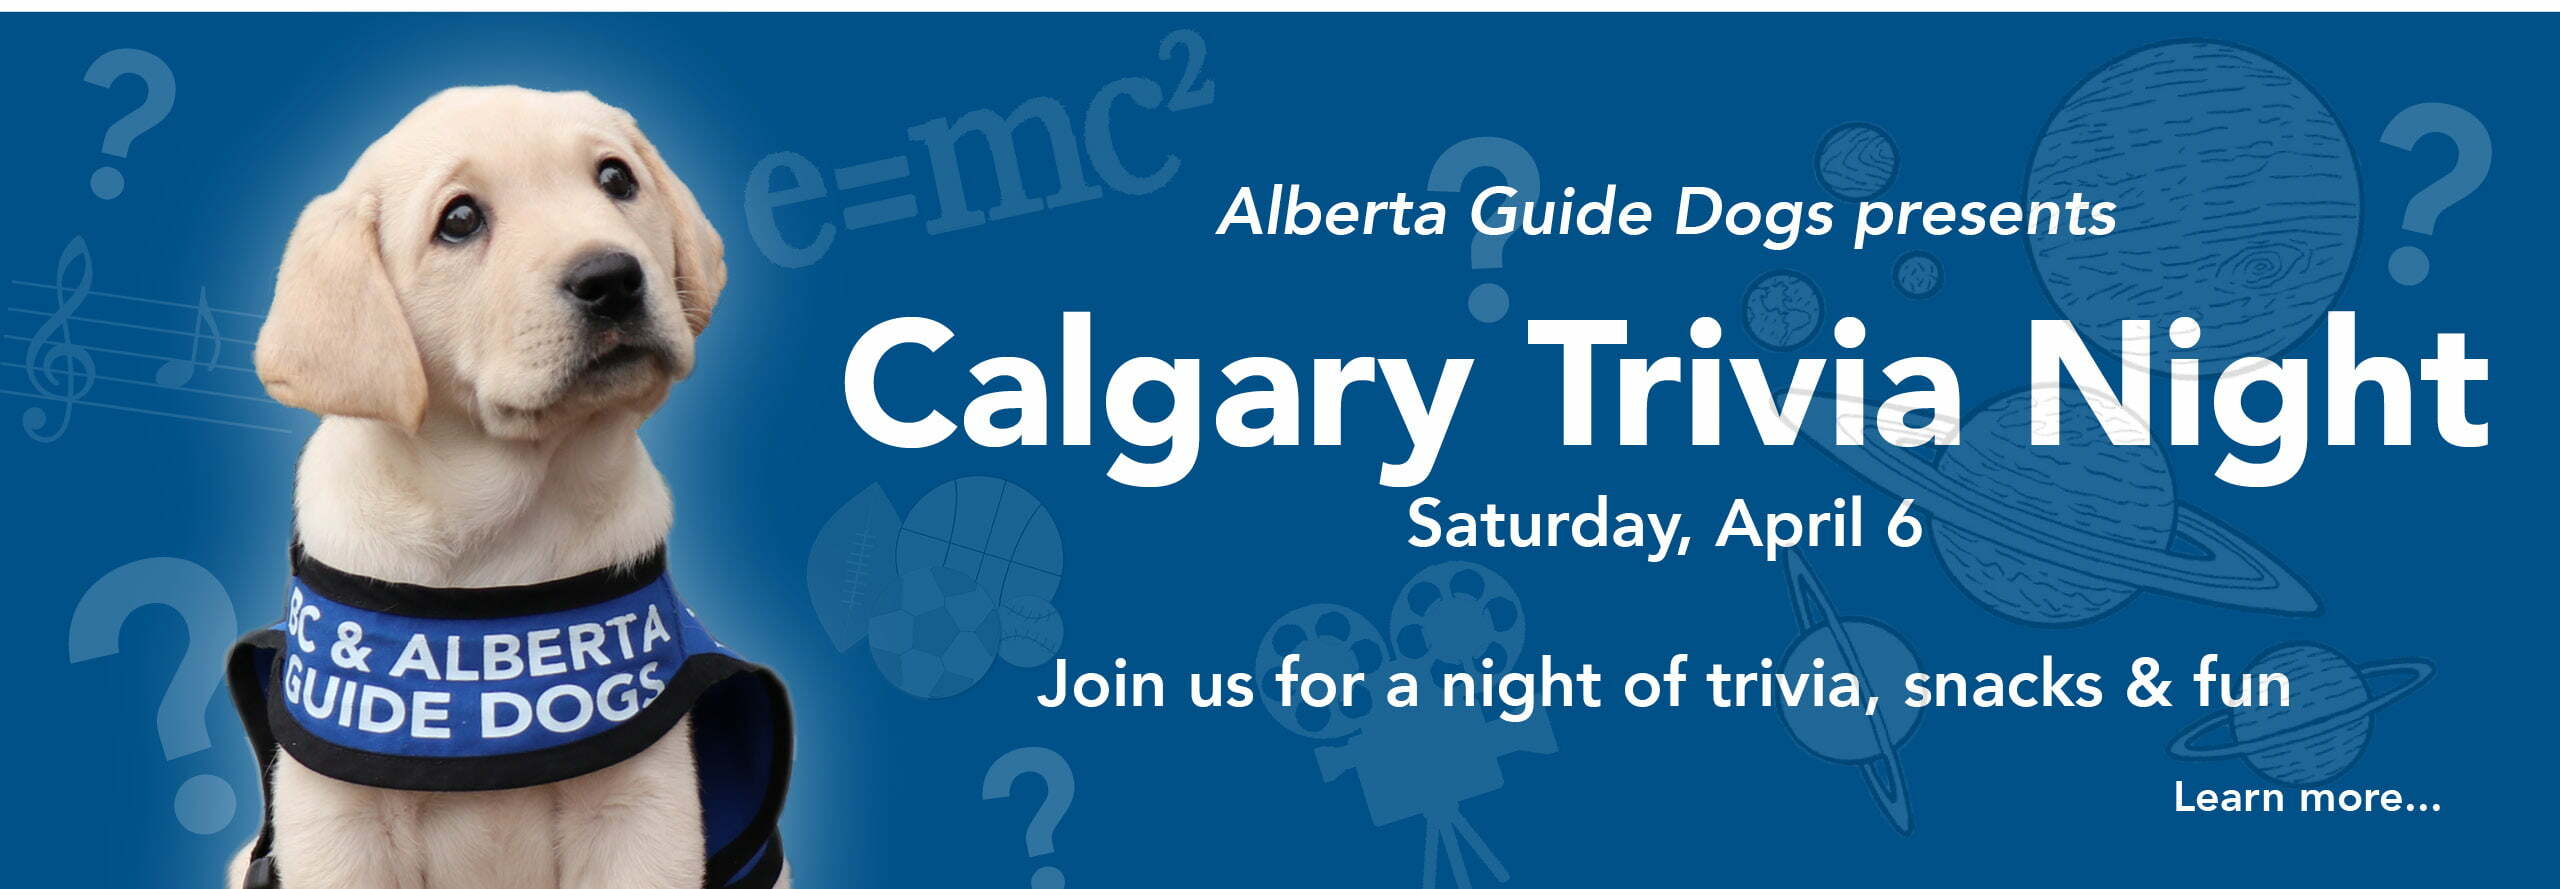 Calgary Trivia Night April 6